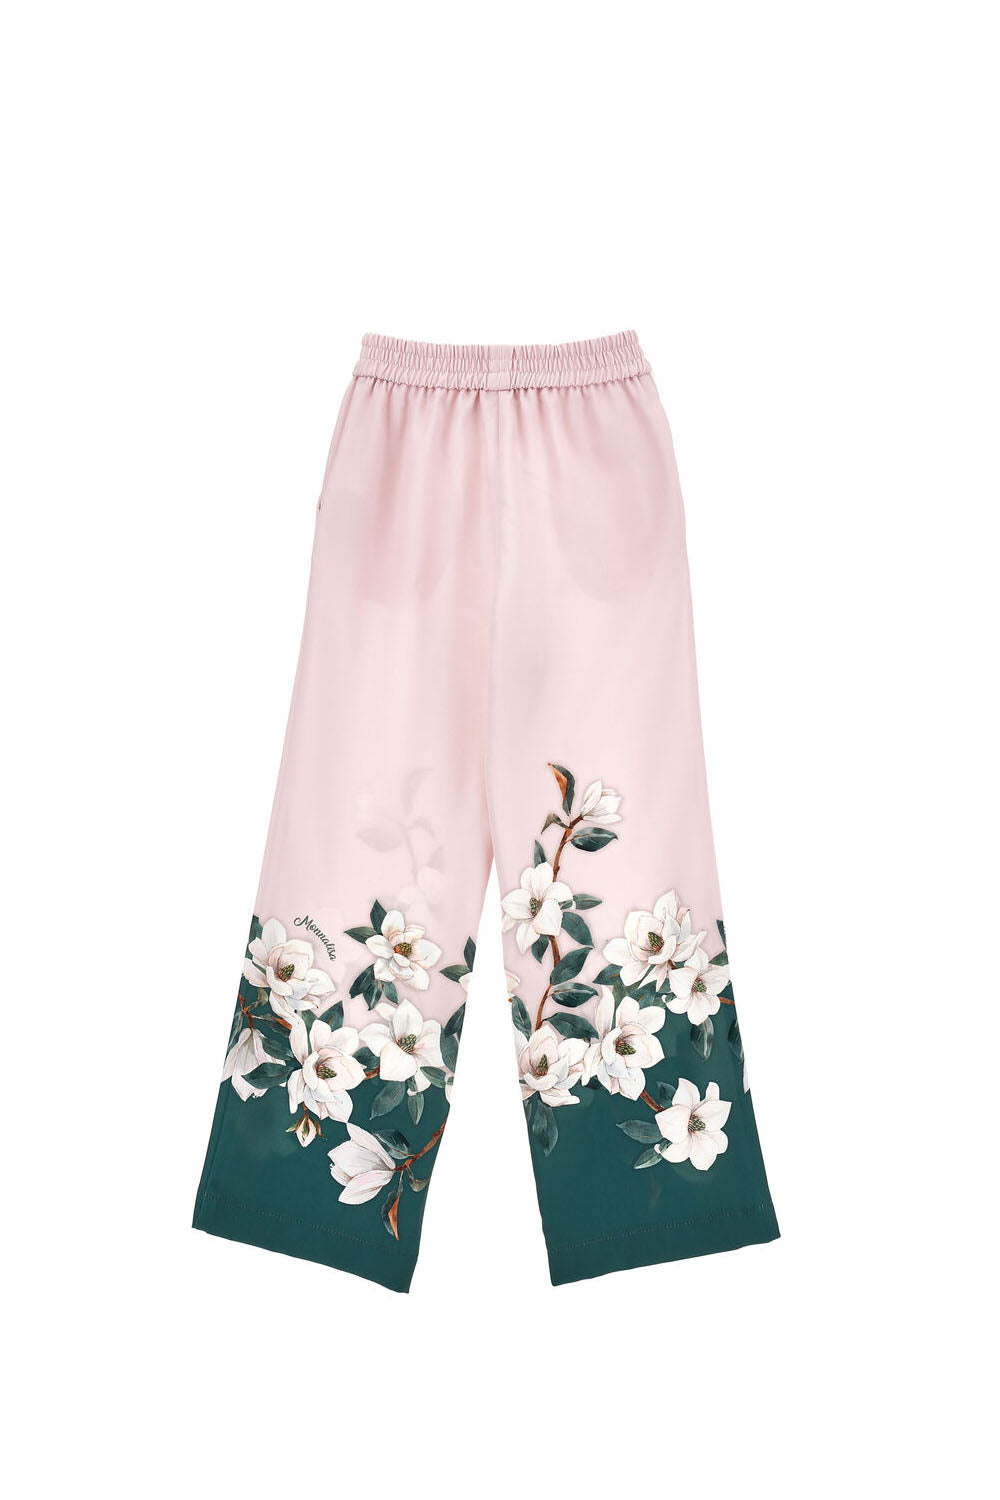 Multi Print Trouser for Girls - Maison7